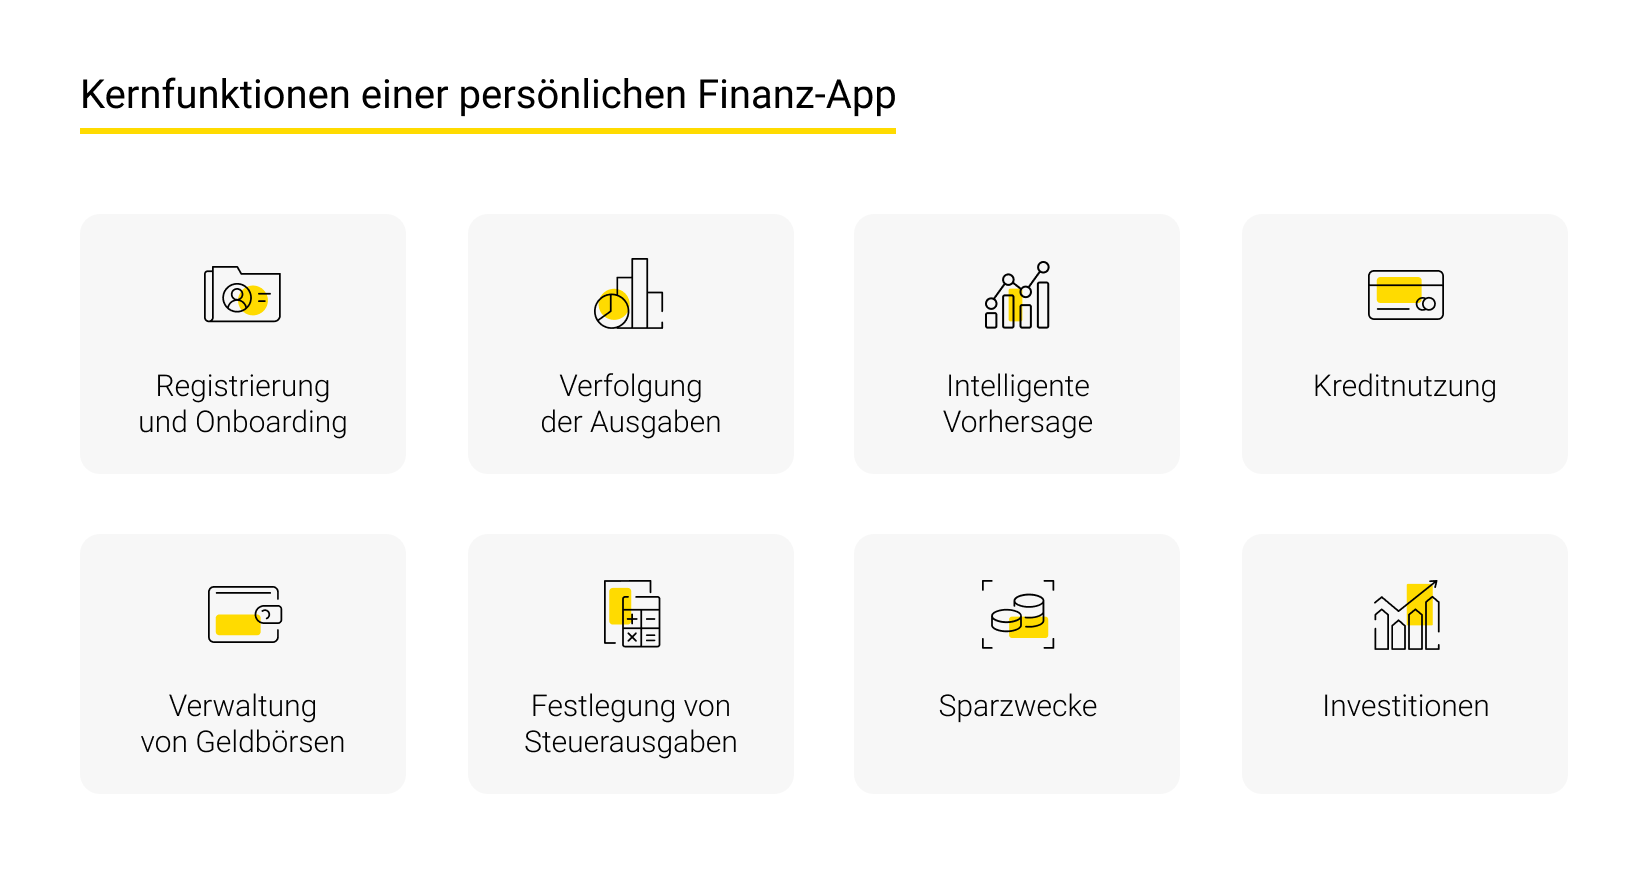 Kernfunktionen einer persönlichen Finanz-App